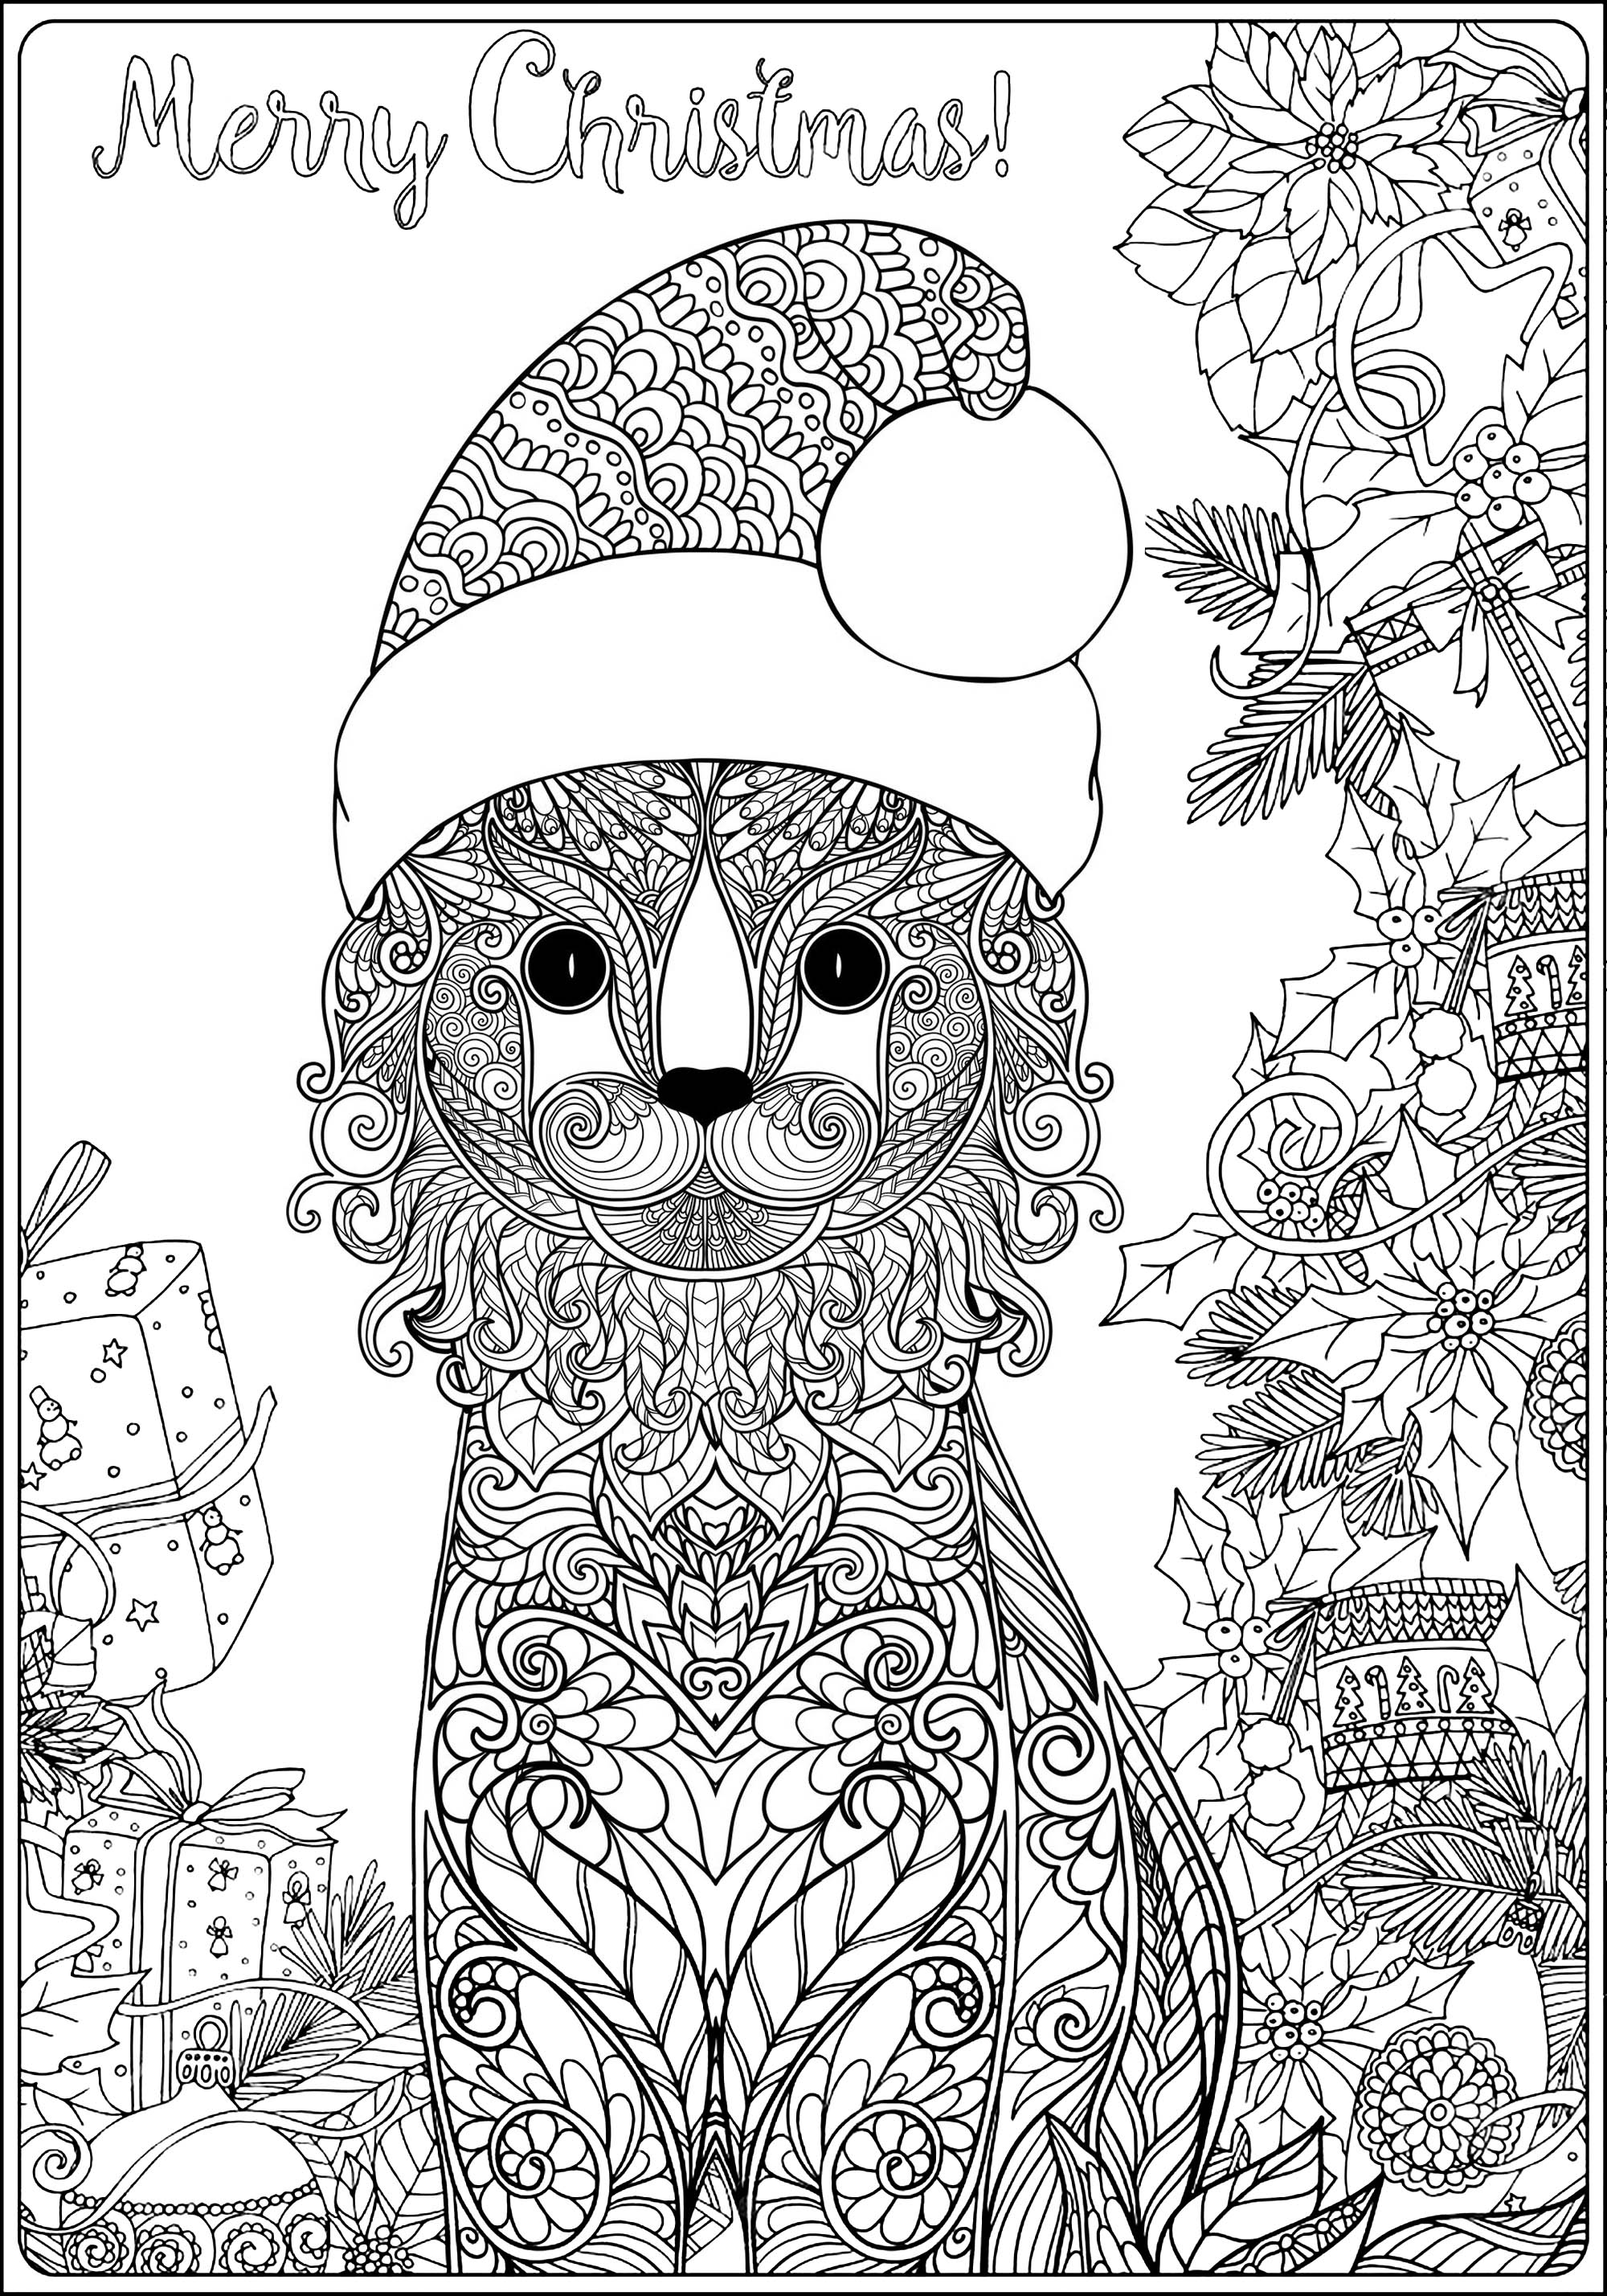 Desenhos para colorir para crianças de Natal para baixar, Fonte : 123rf   Artista : Elena Besedina